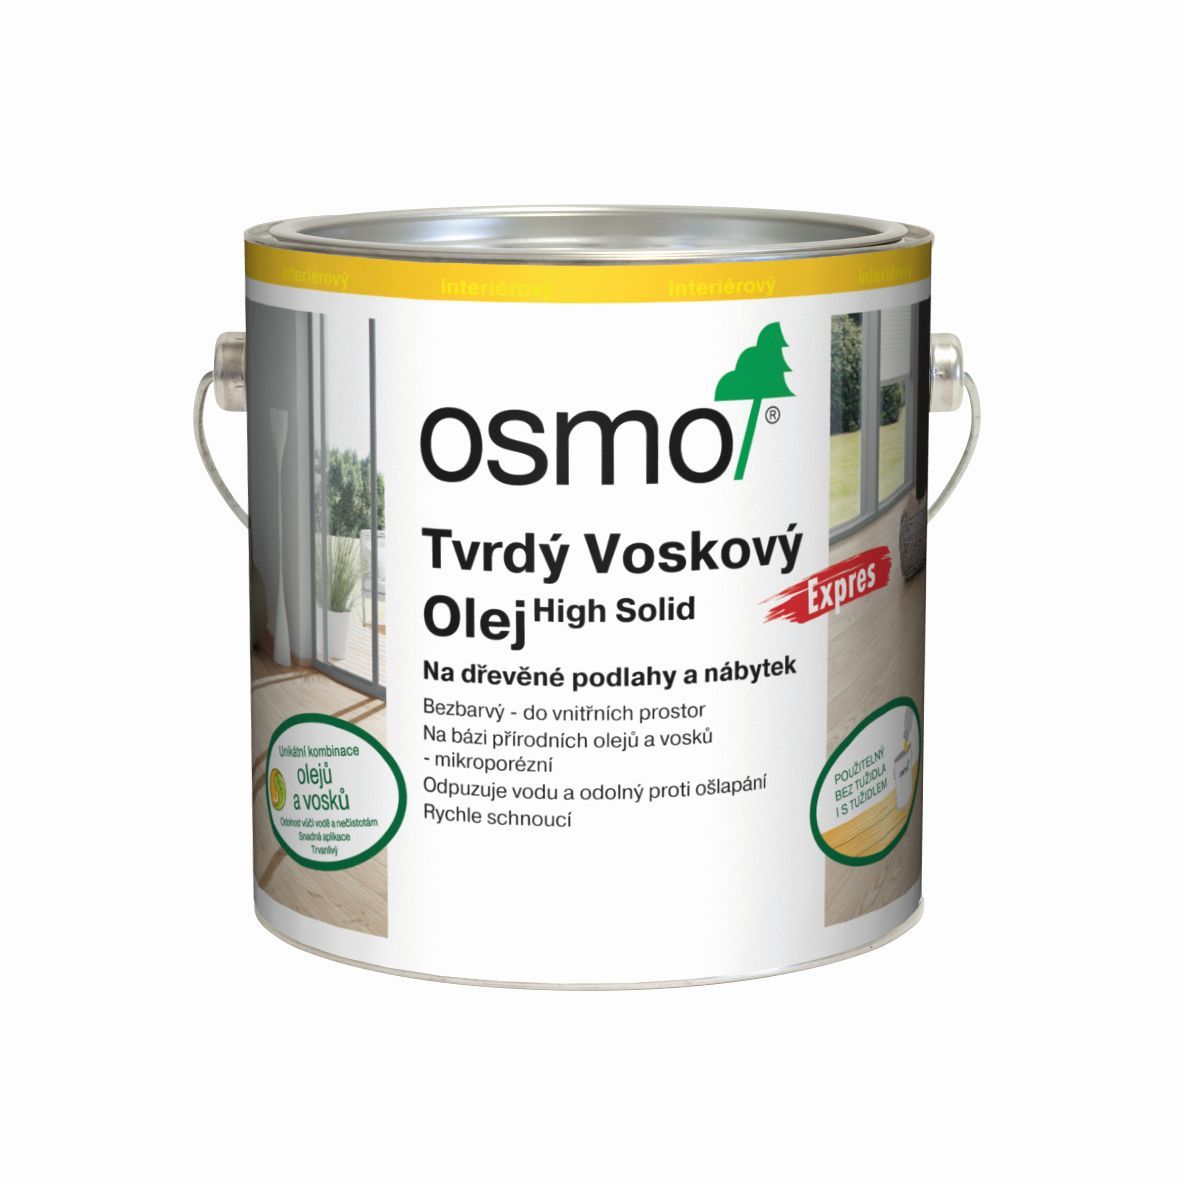 OSMO 3332 Tvrd voskov olej Express Bezbarv hedvbn polomat 0,75l